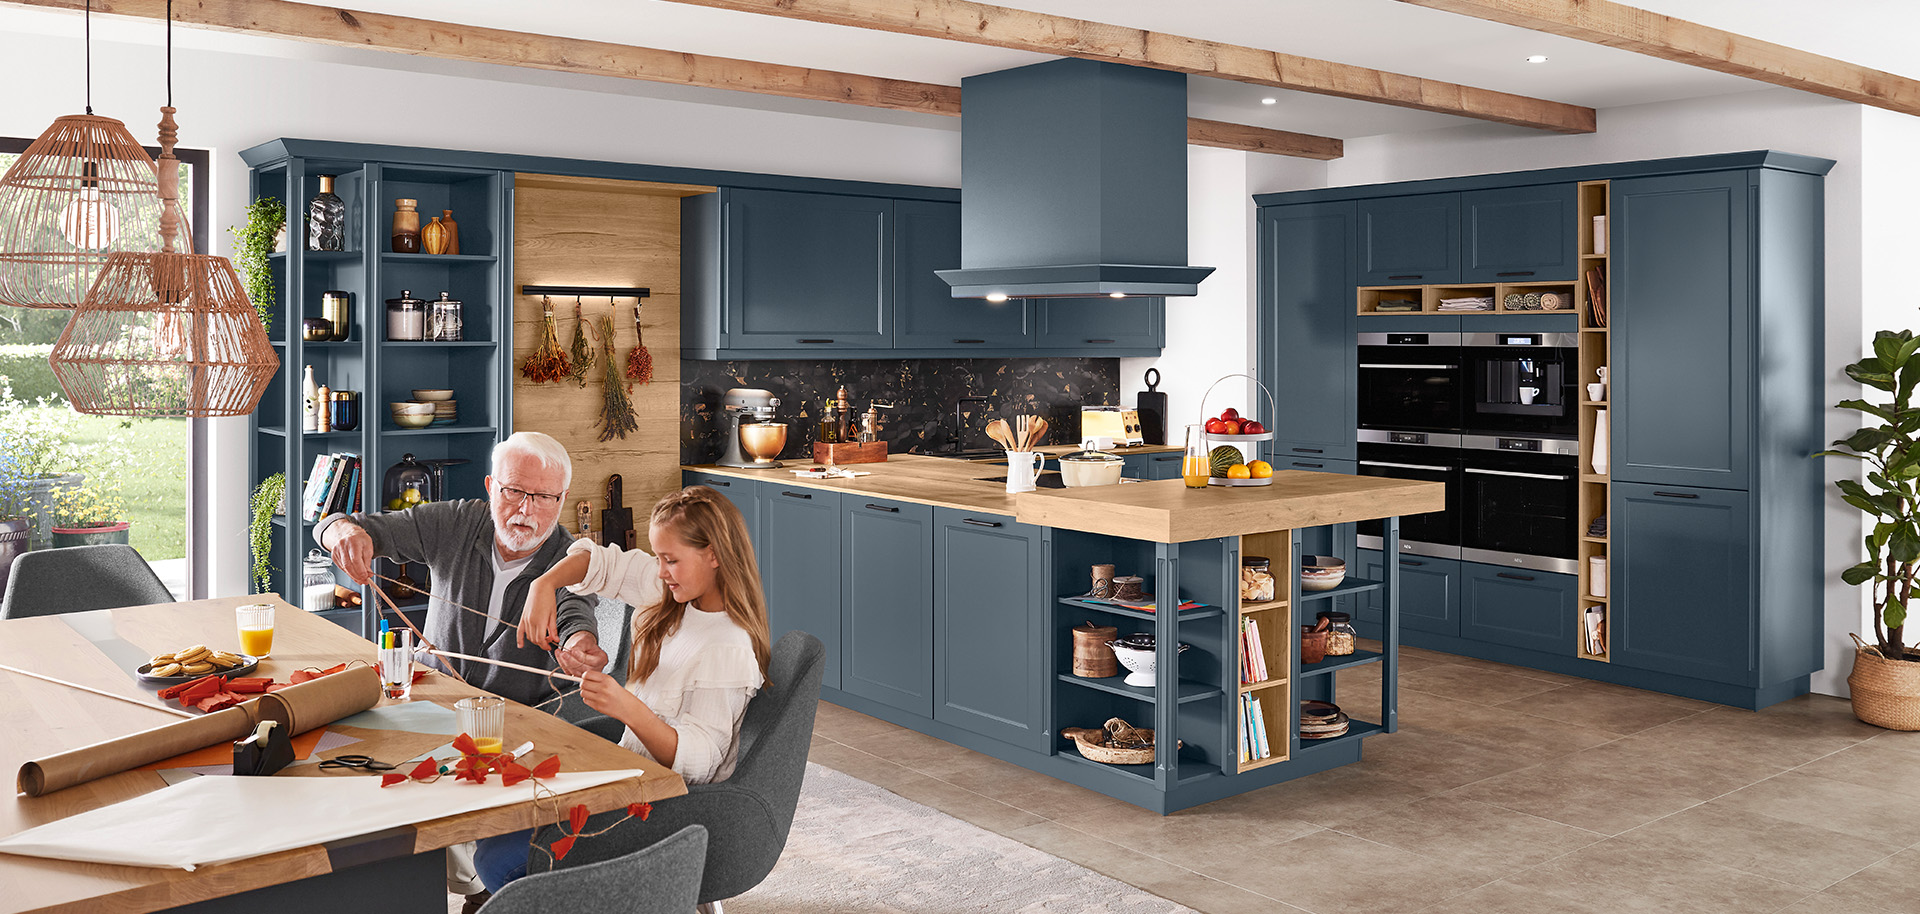 Una cucina spaziosa e moderna con mobili blu navy, elettrodomestici in acciaio inossidabile e un anziano che crea con un bambino a un tavolo di legno illuminato dal sole.